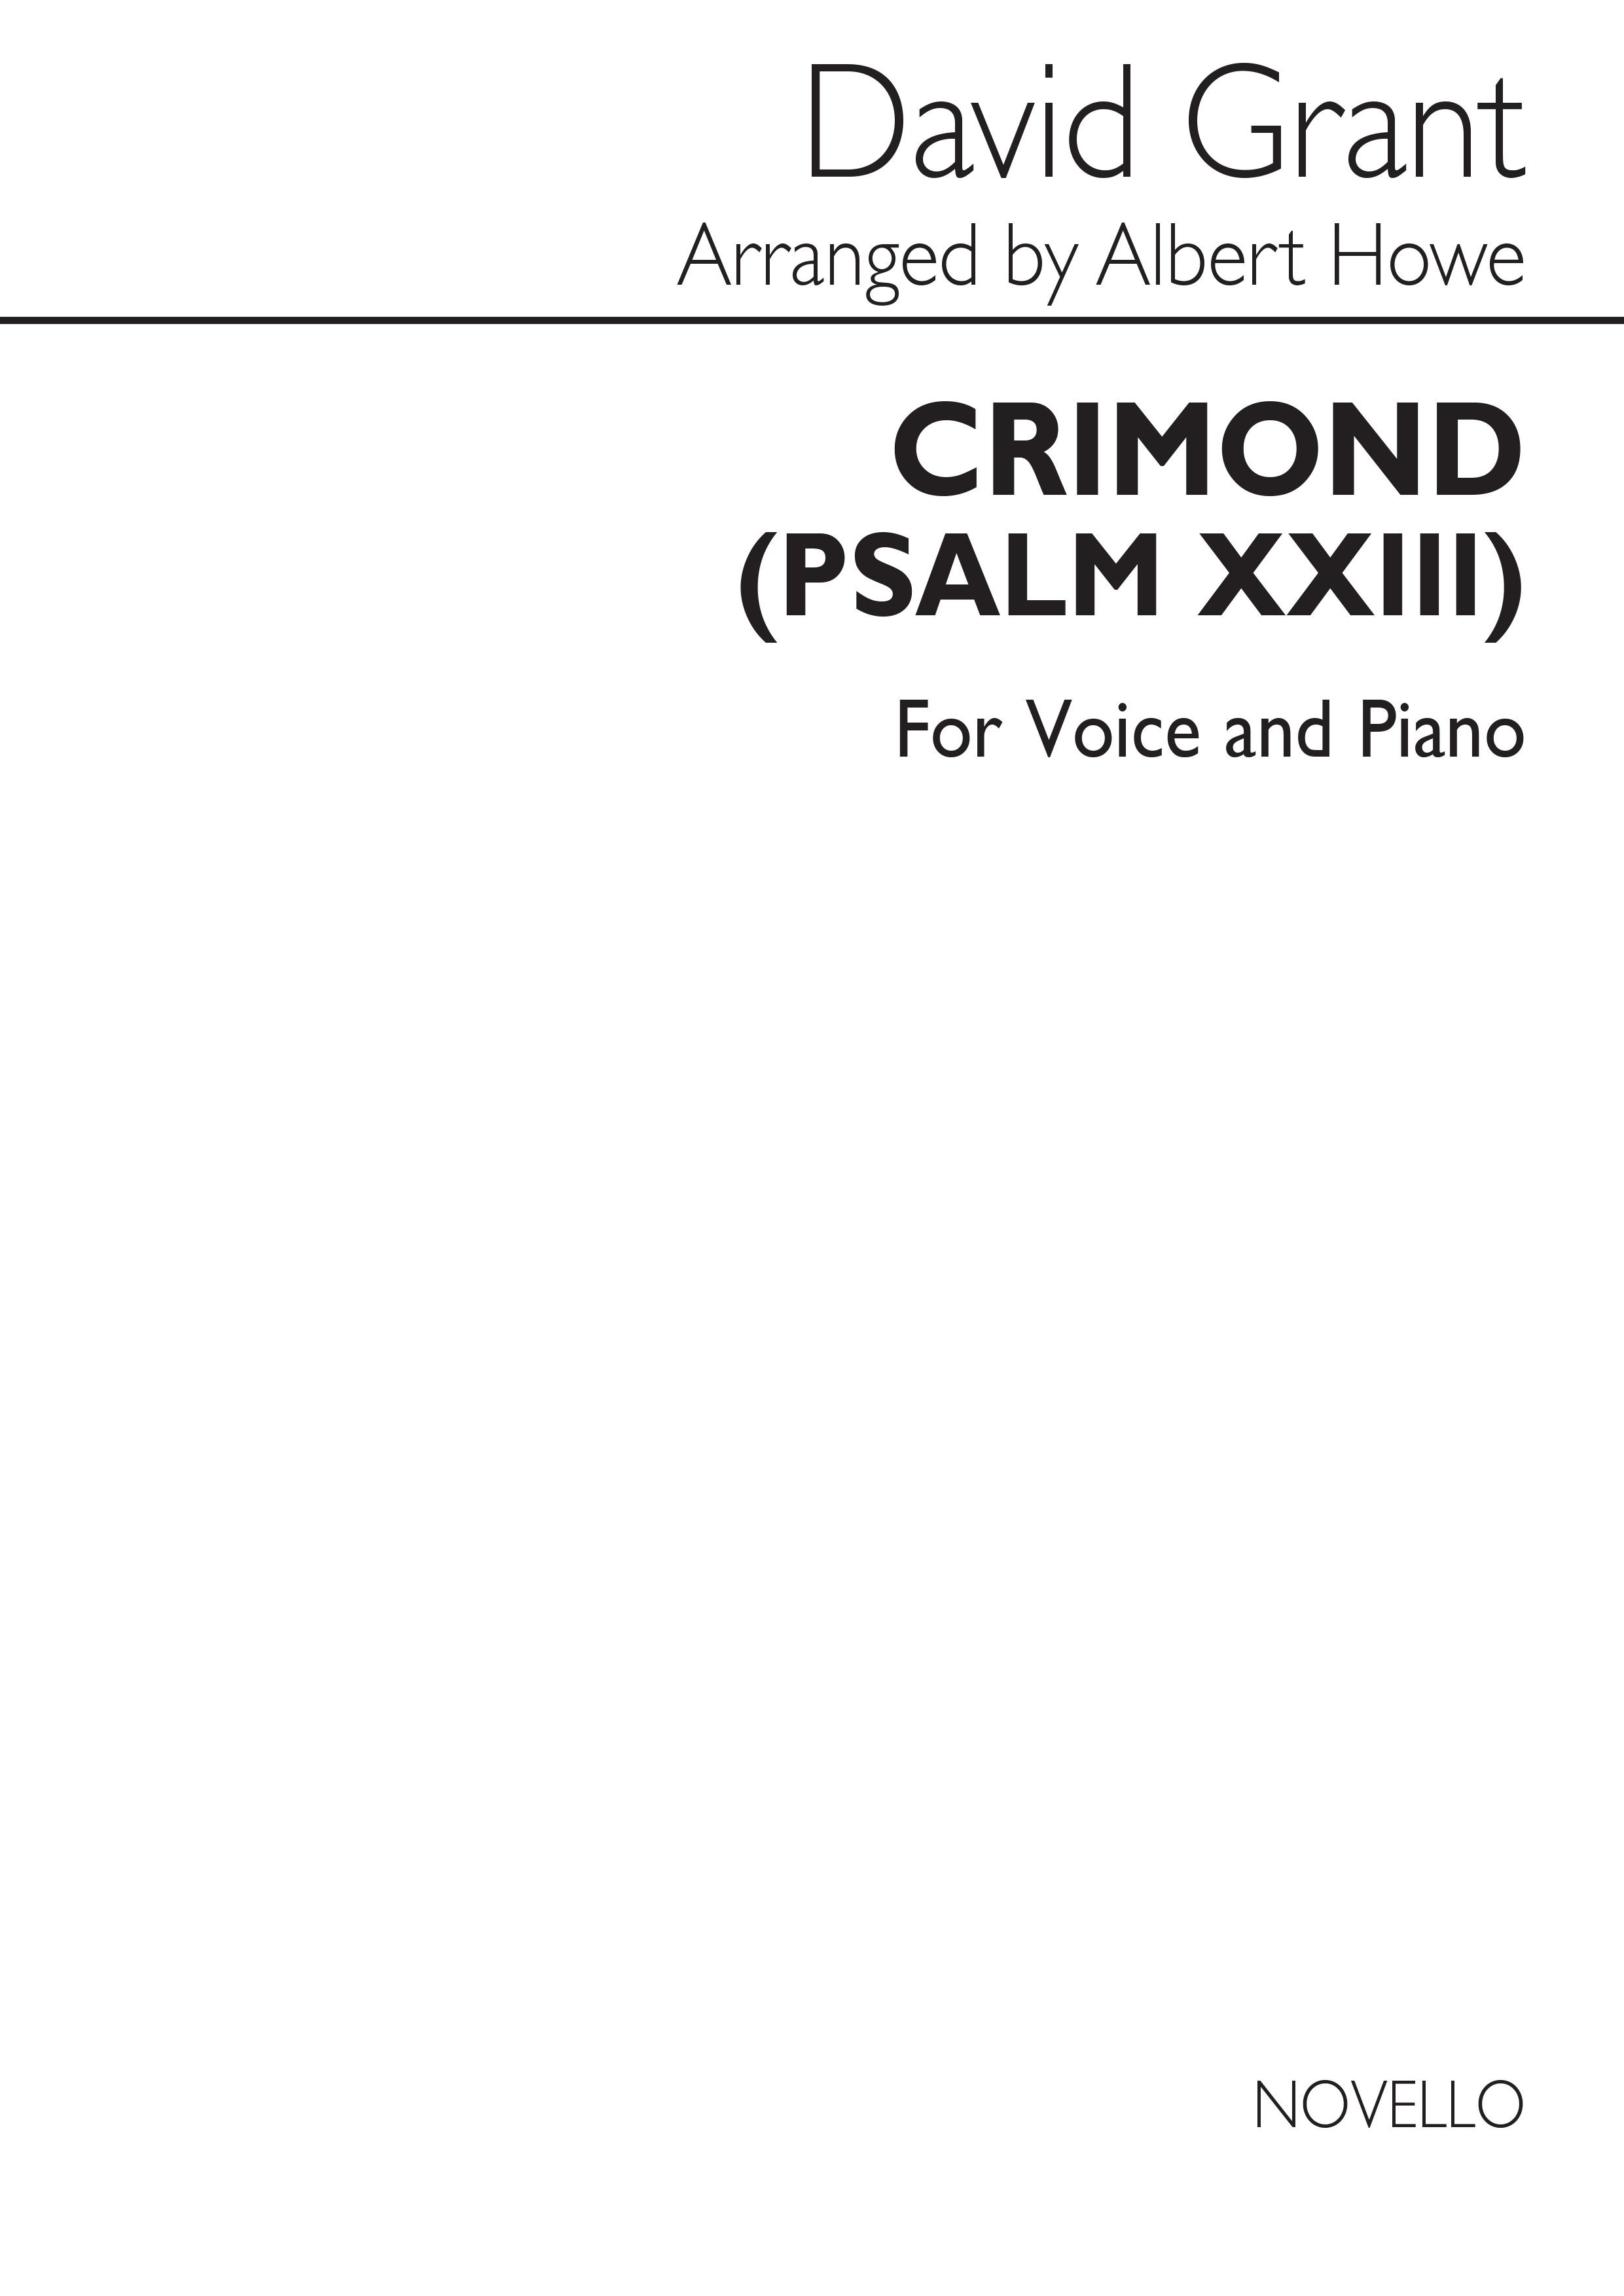 Grant, D Crimond Vce/Pf